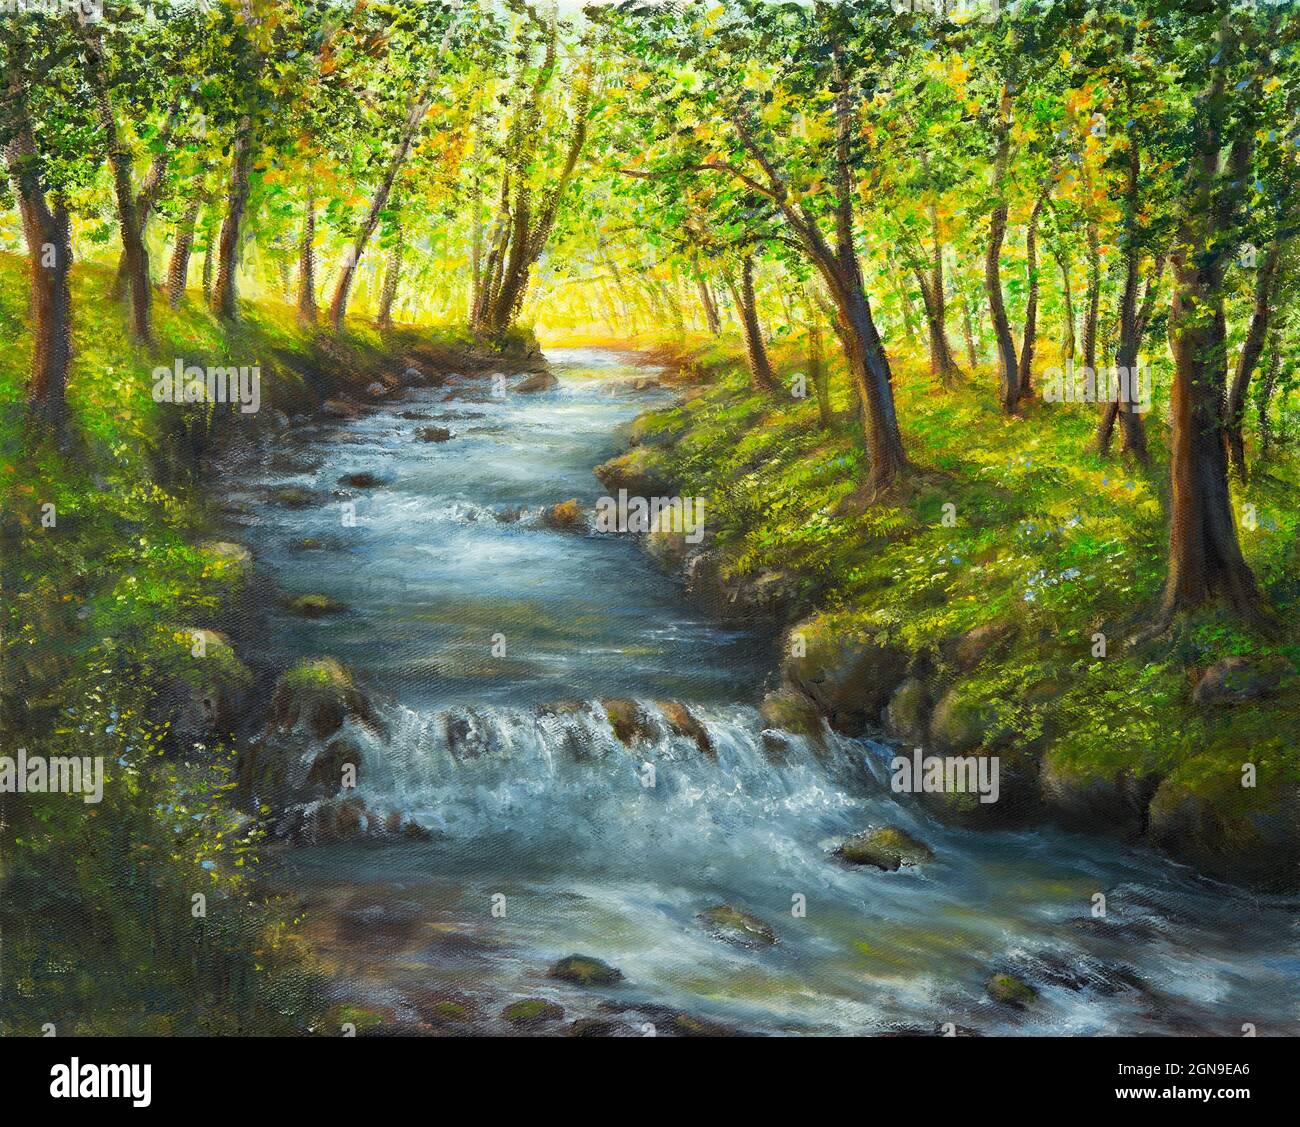 Peinture à l'huile originale du paysage de source d'beautifl, forêt et rivière sur toile.Impressionnisme moderne, modernisme, marinisme Banque D'Images